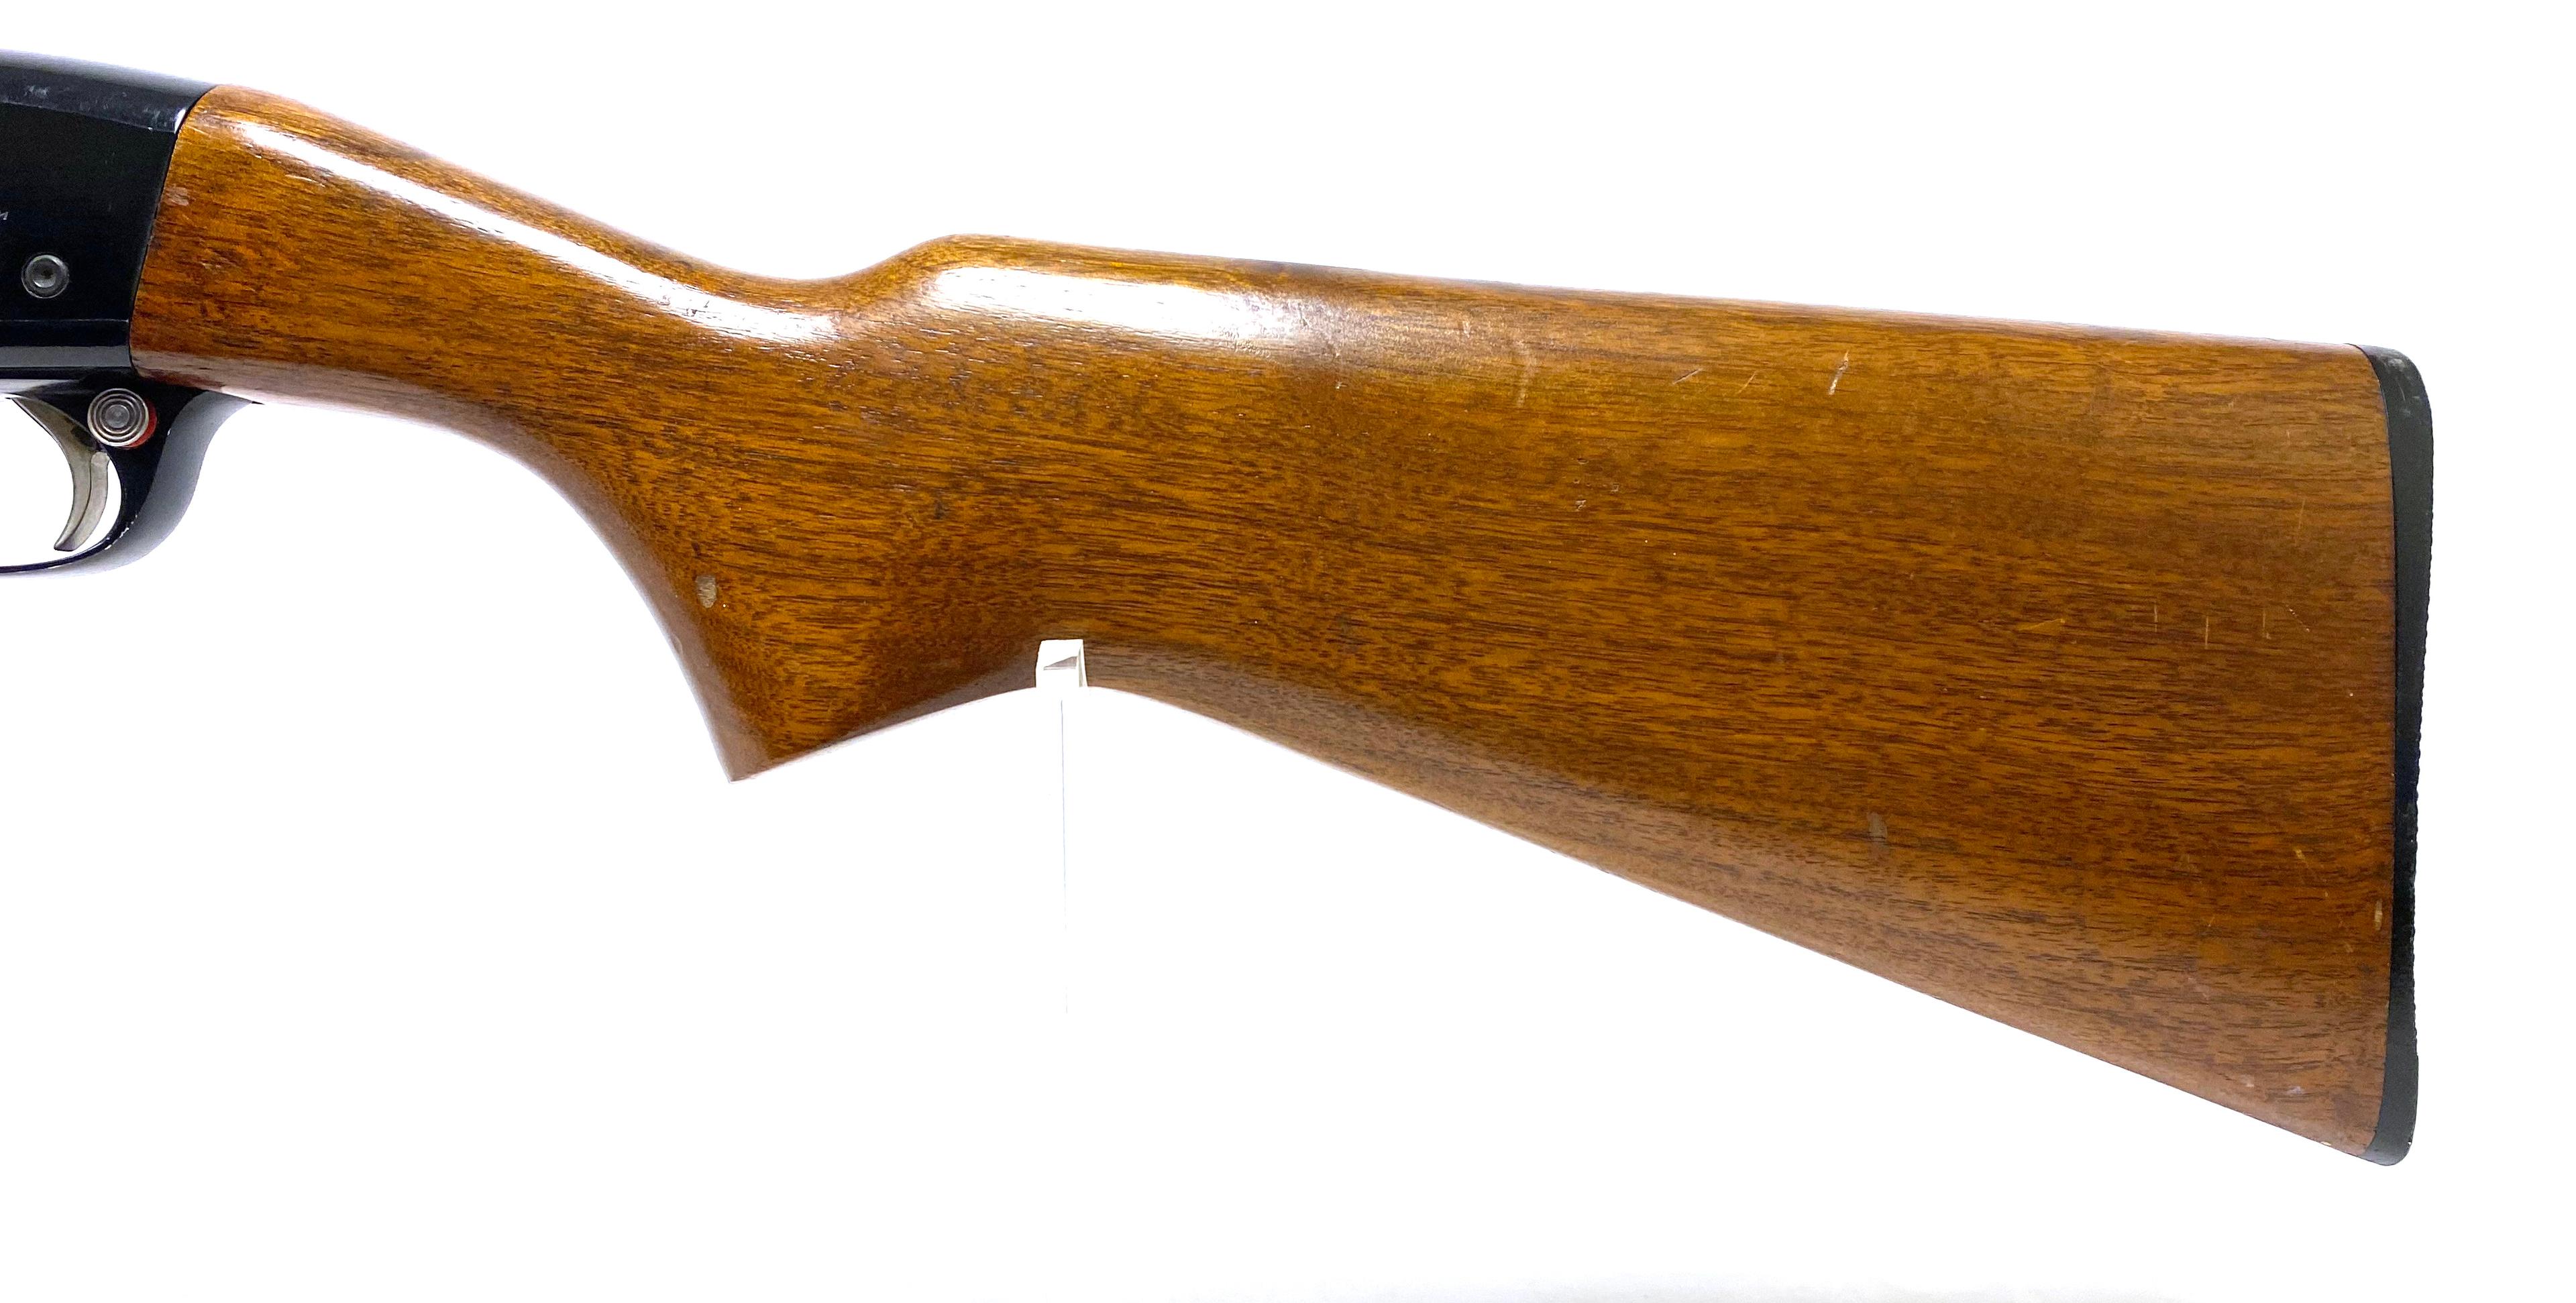 Excellent Remington Fieldmaster Model 572 .22 S-L-LR Pump Action Rifle